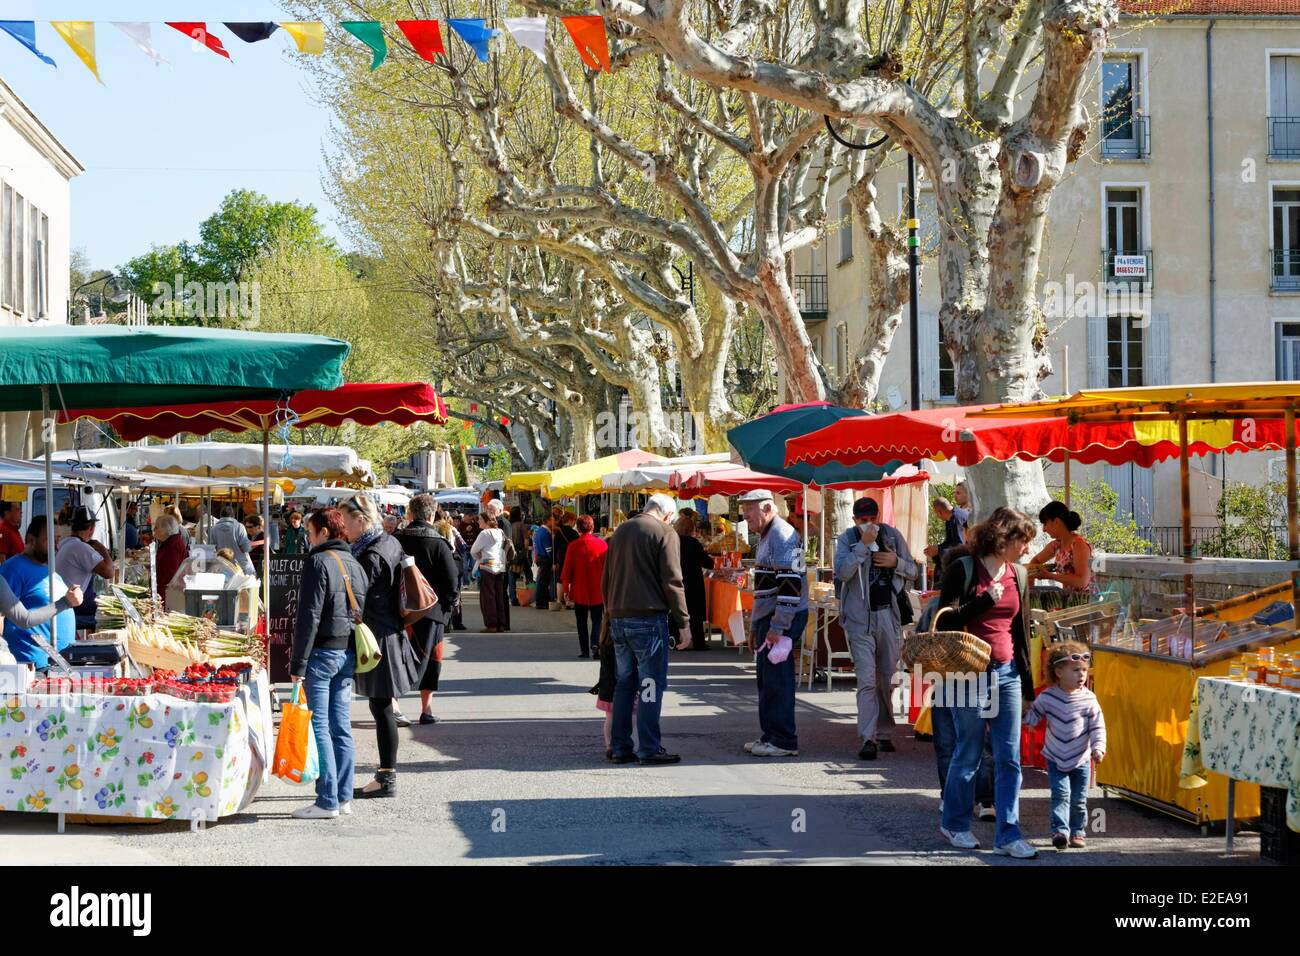 France, Gard, Saint Jean du Gard, market day Stock Photo